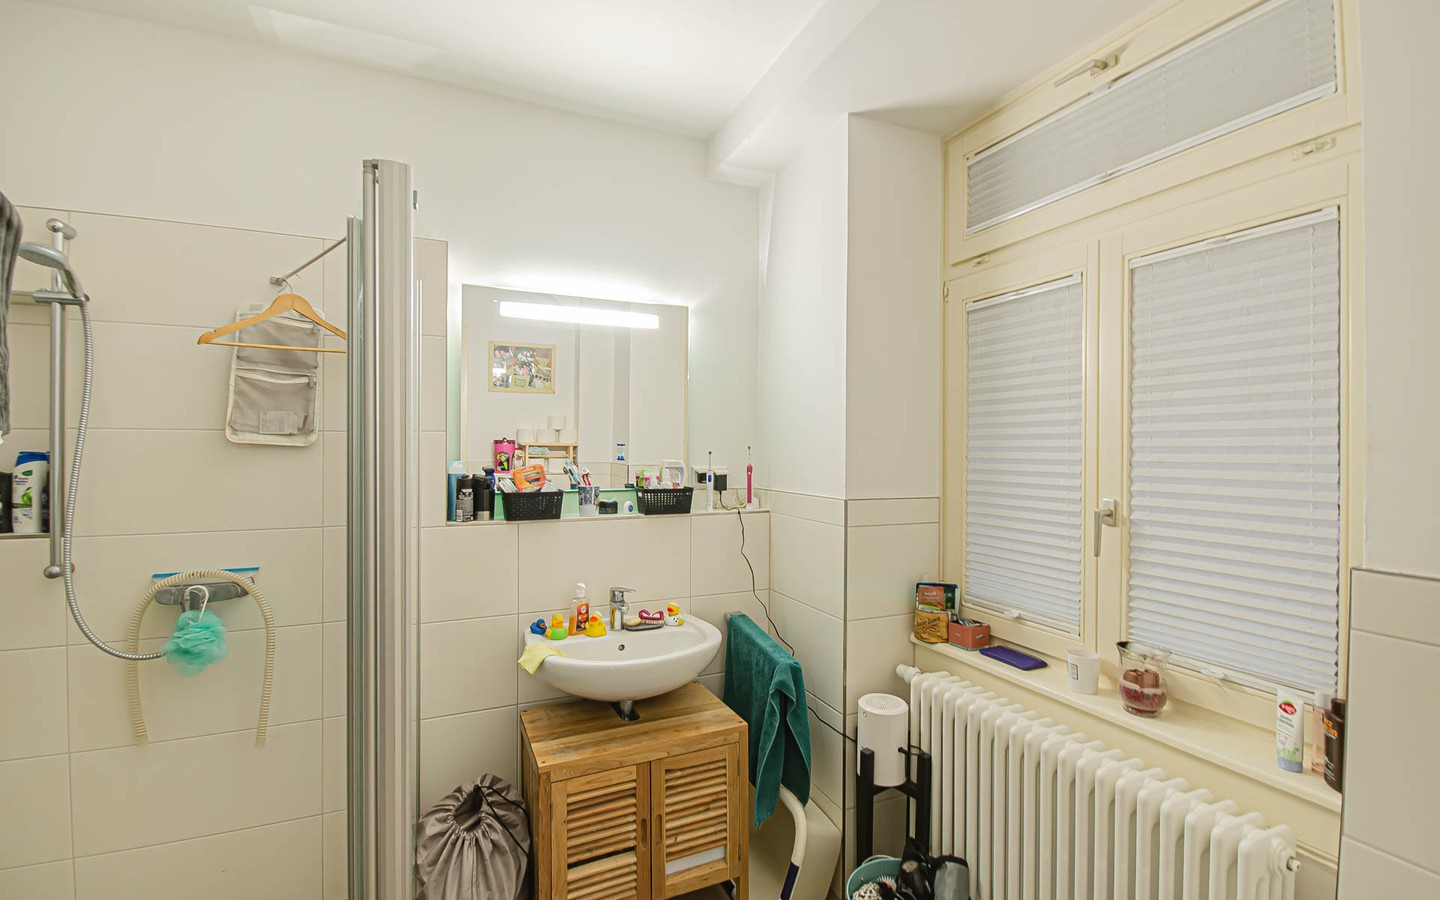 Badezimmer - Mittendrin und dennoch ruhig:
Sanierte Altbauwohnung mit Gartenanteil